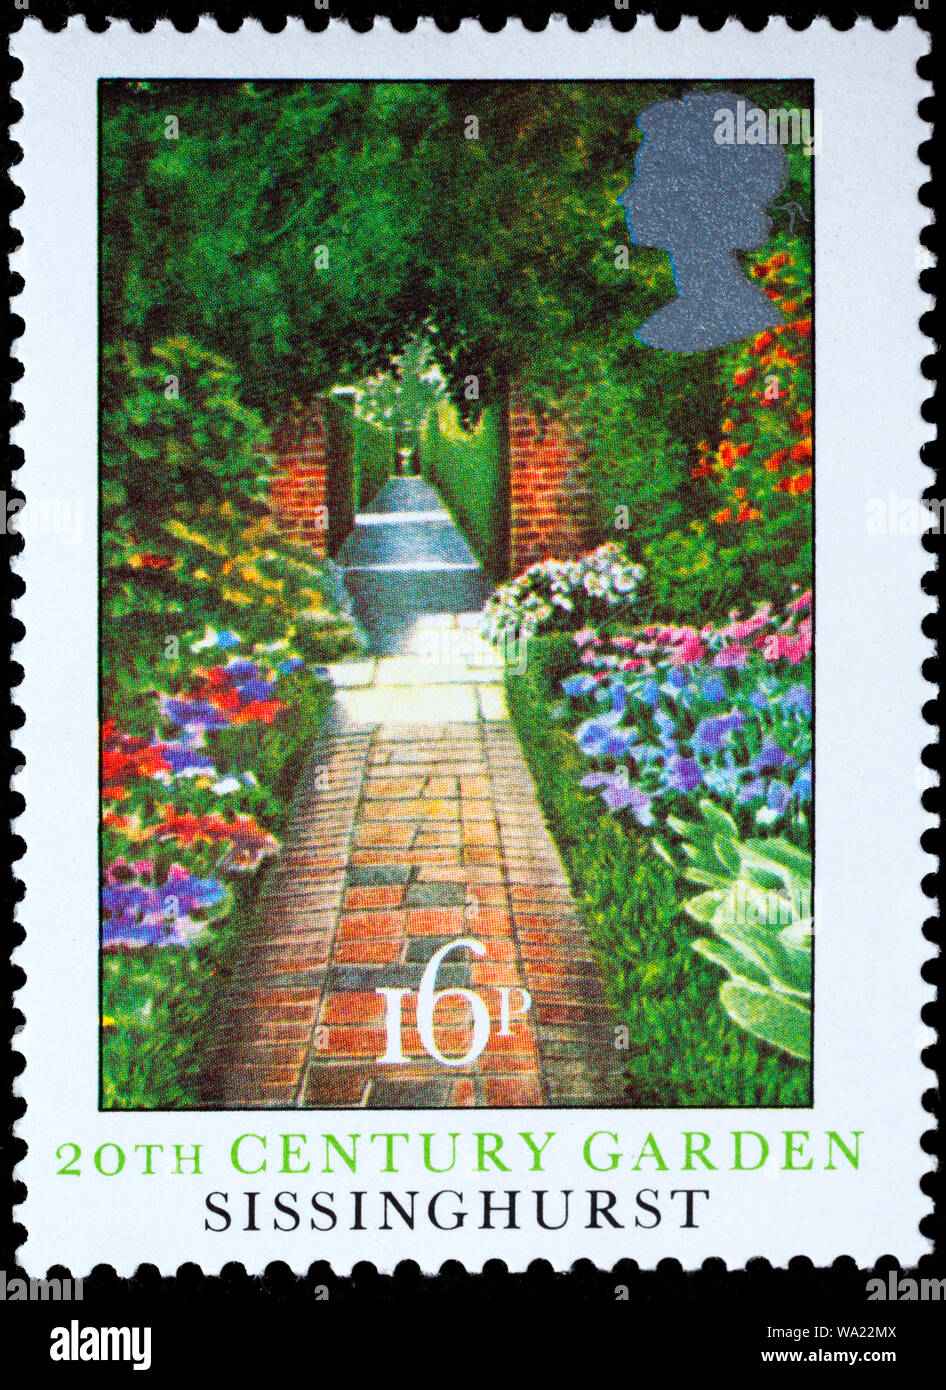 Sissinghurst Castle Garden, postage stamp, UK, 1983 Stock Photo